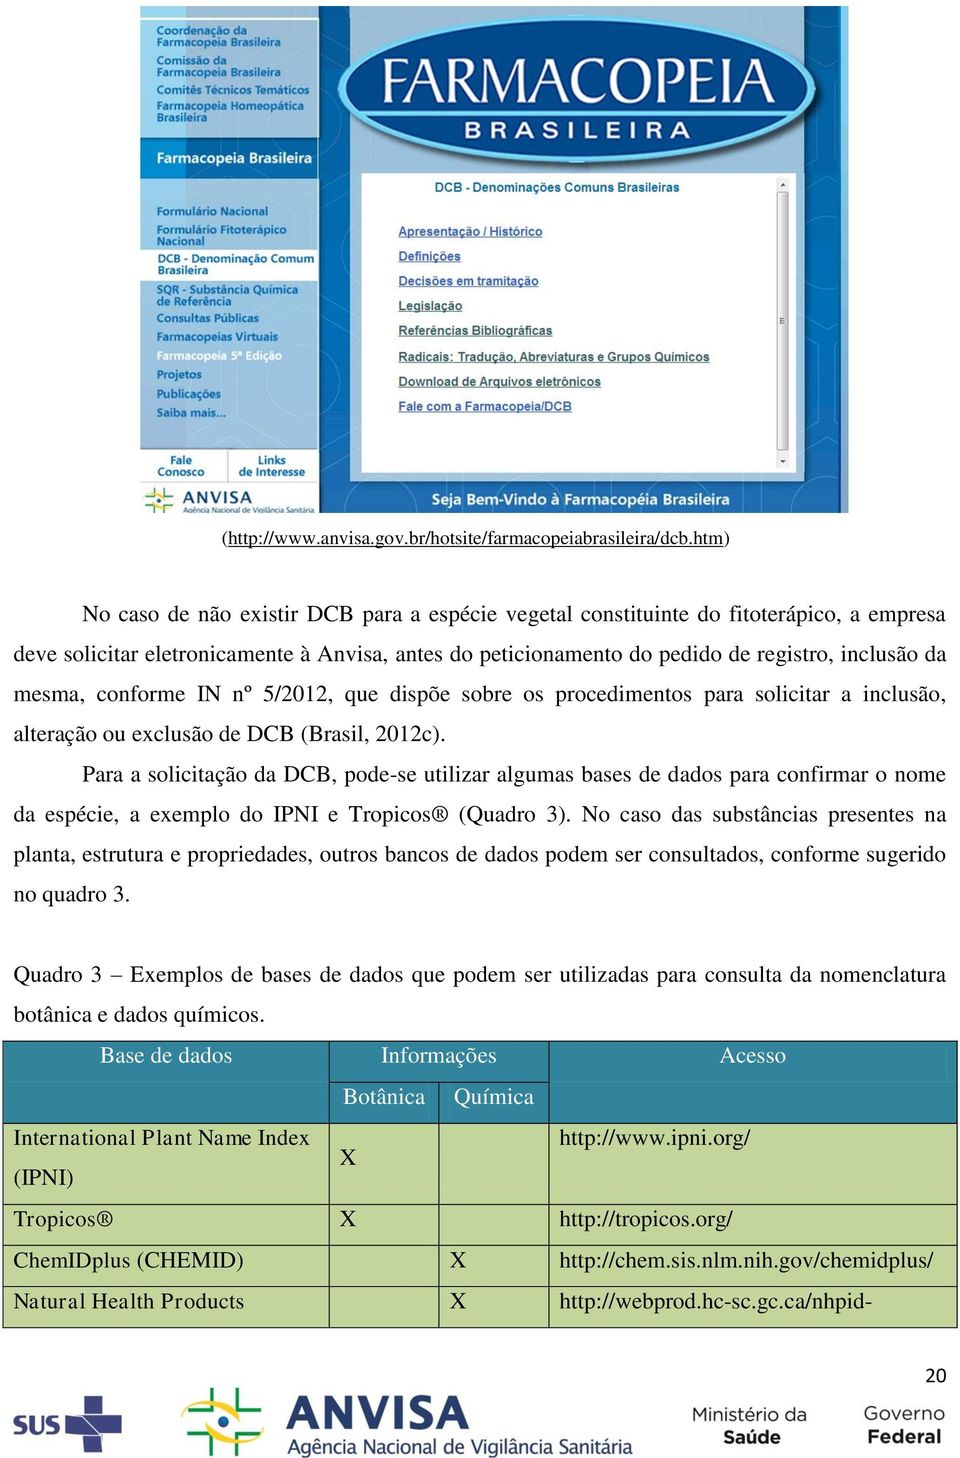 mesma, conforme IN nº 5/2012, que dispõe sobre os procedimentos para solicitar a inclusão, alteração ou exclusão de DCB (Brasil, 2012c).